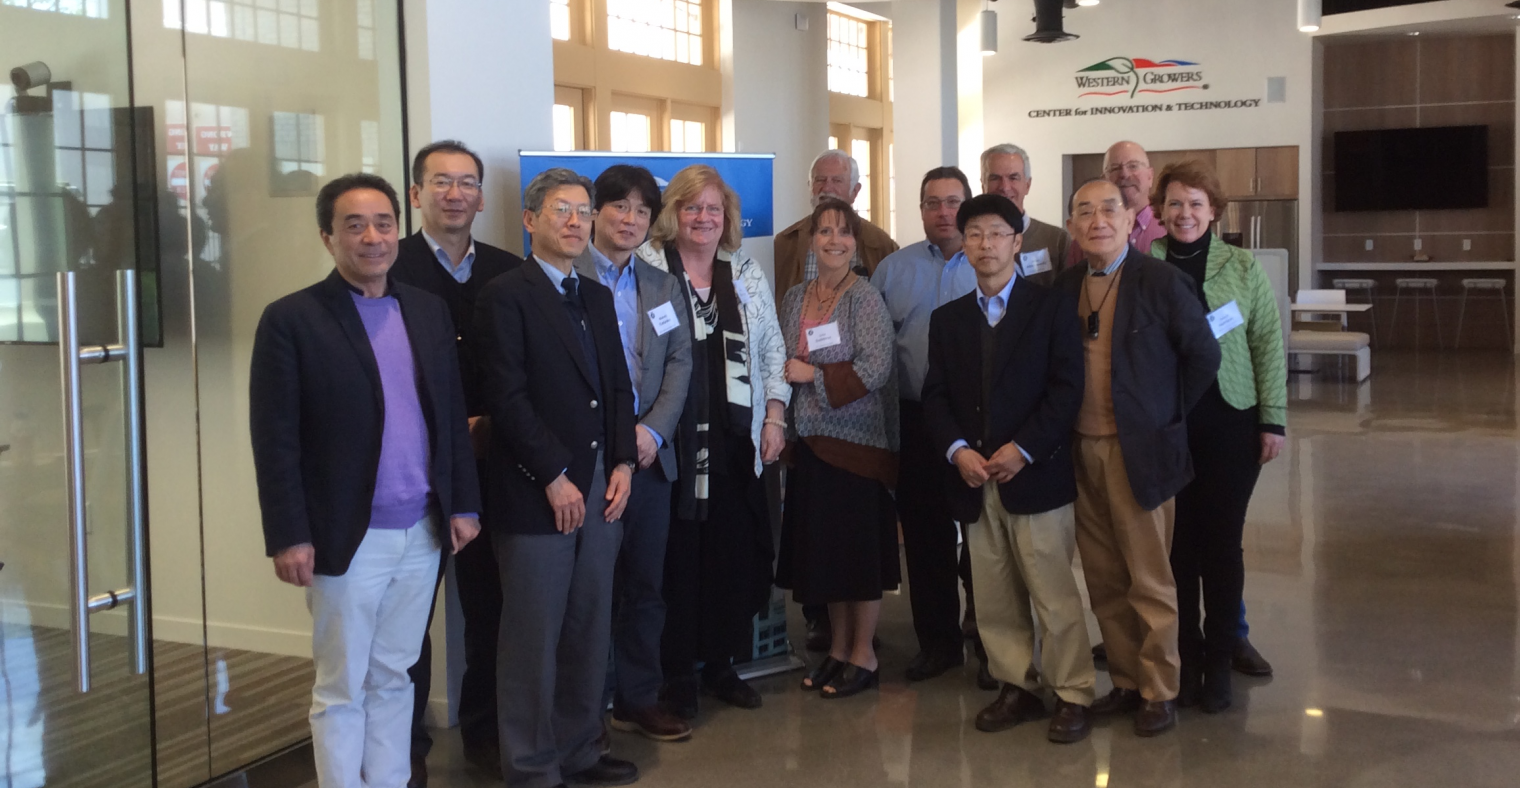 Monterey County Farm Bureau, Mitsui Chemicals Inc and UC Davis visit WGCIT.